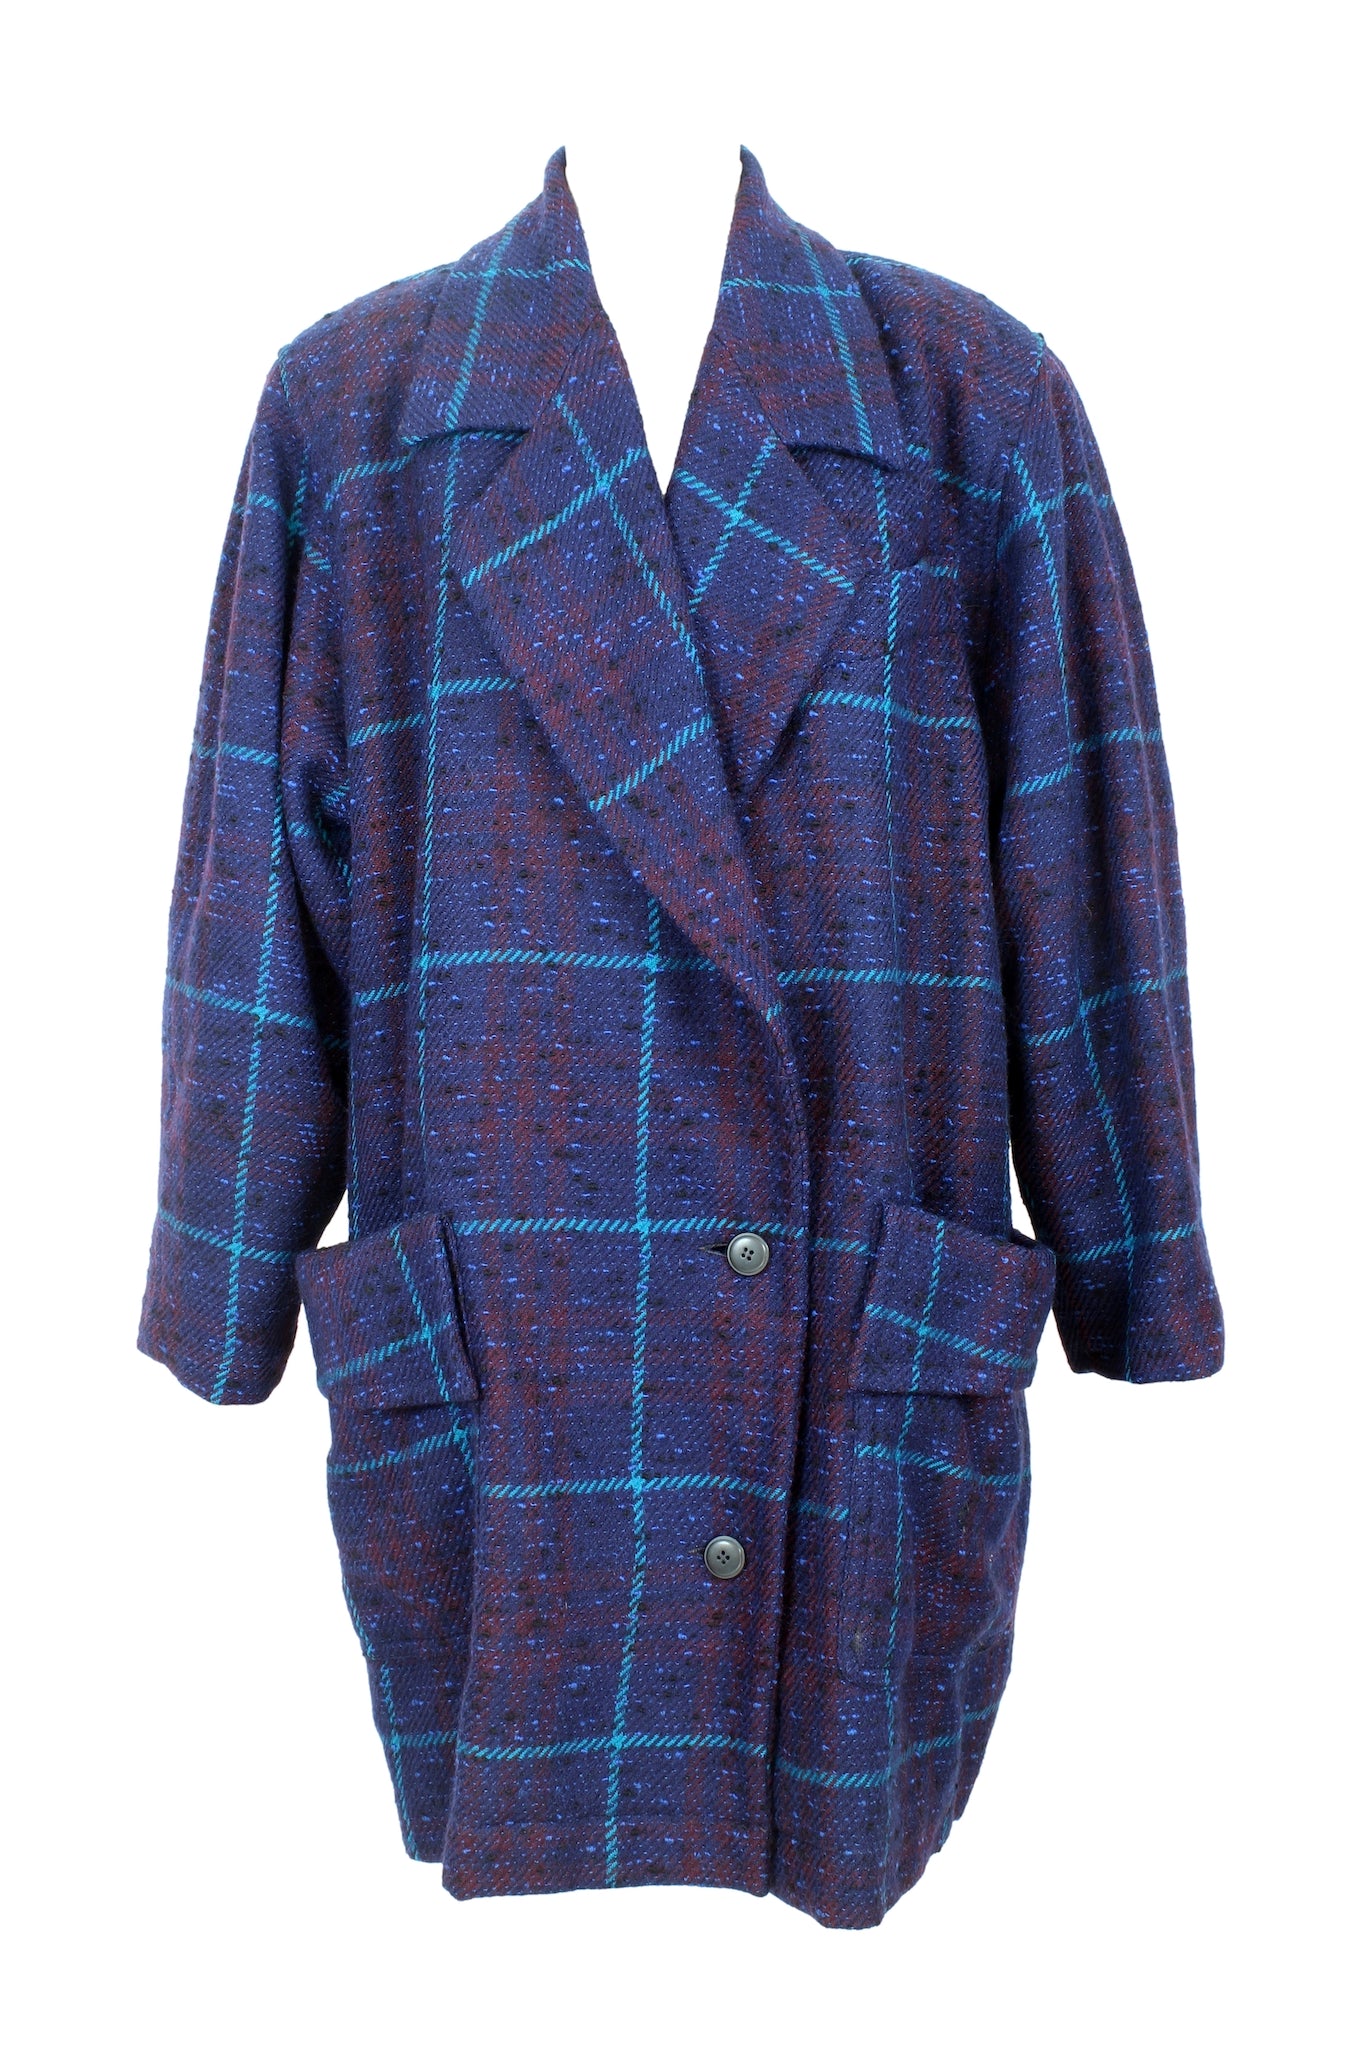 Vintage Women's Coats - Buy on Dedè Couture